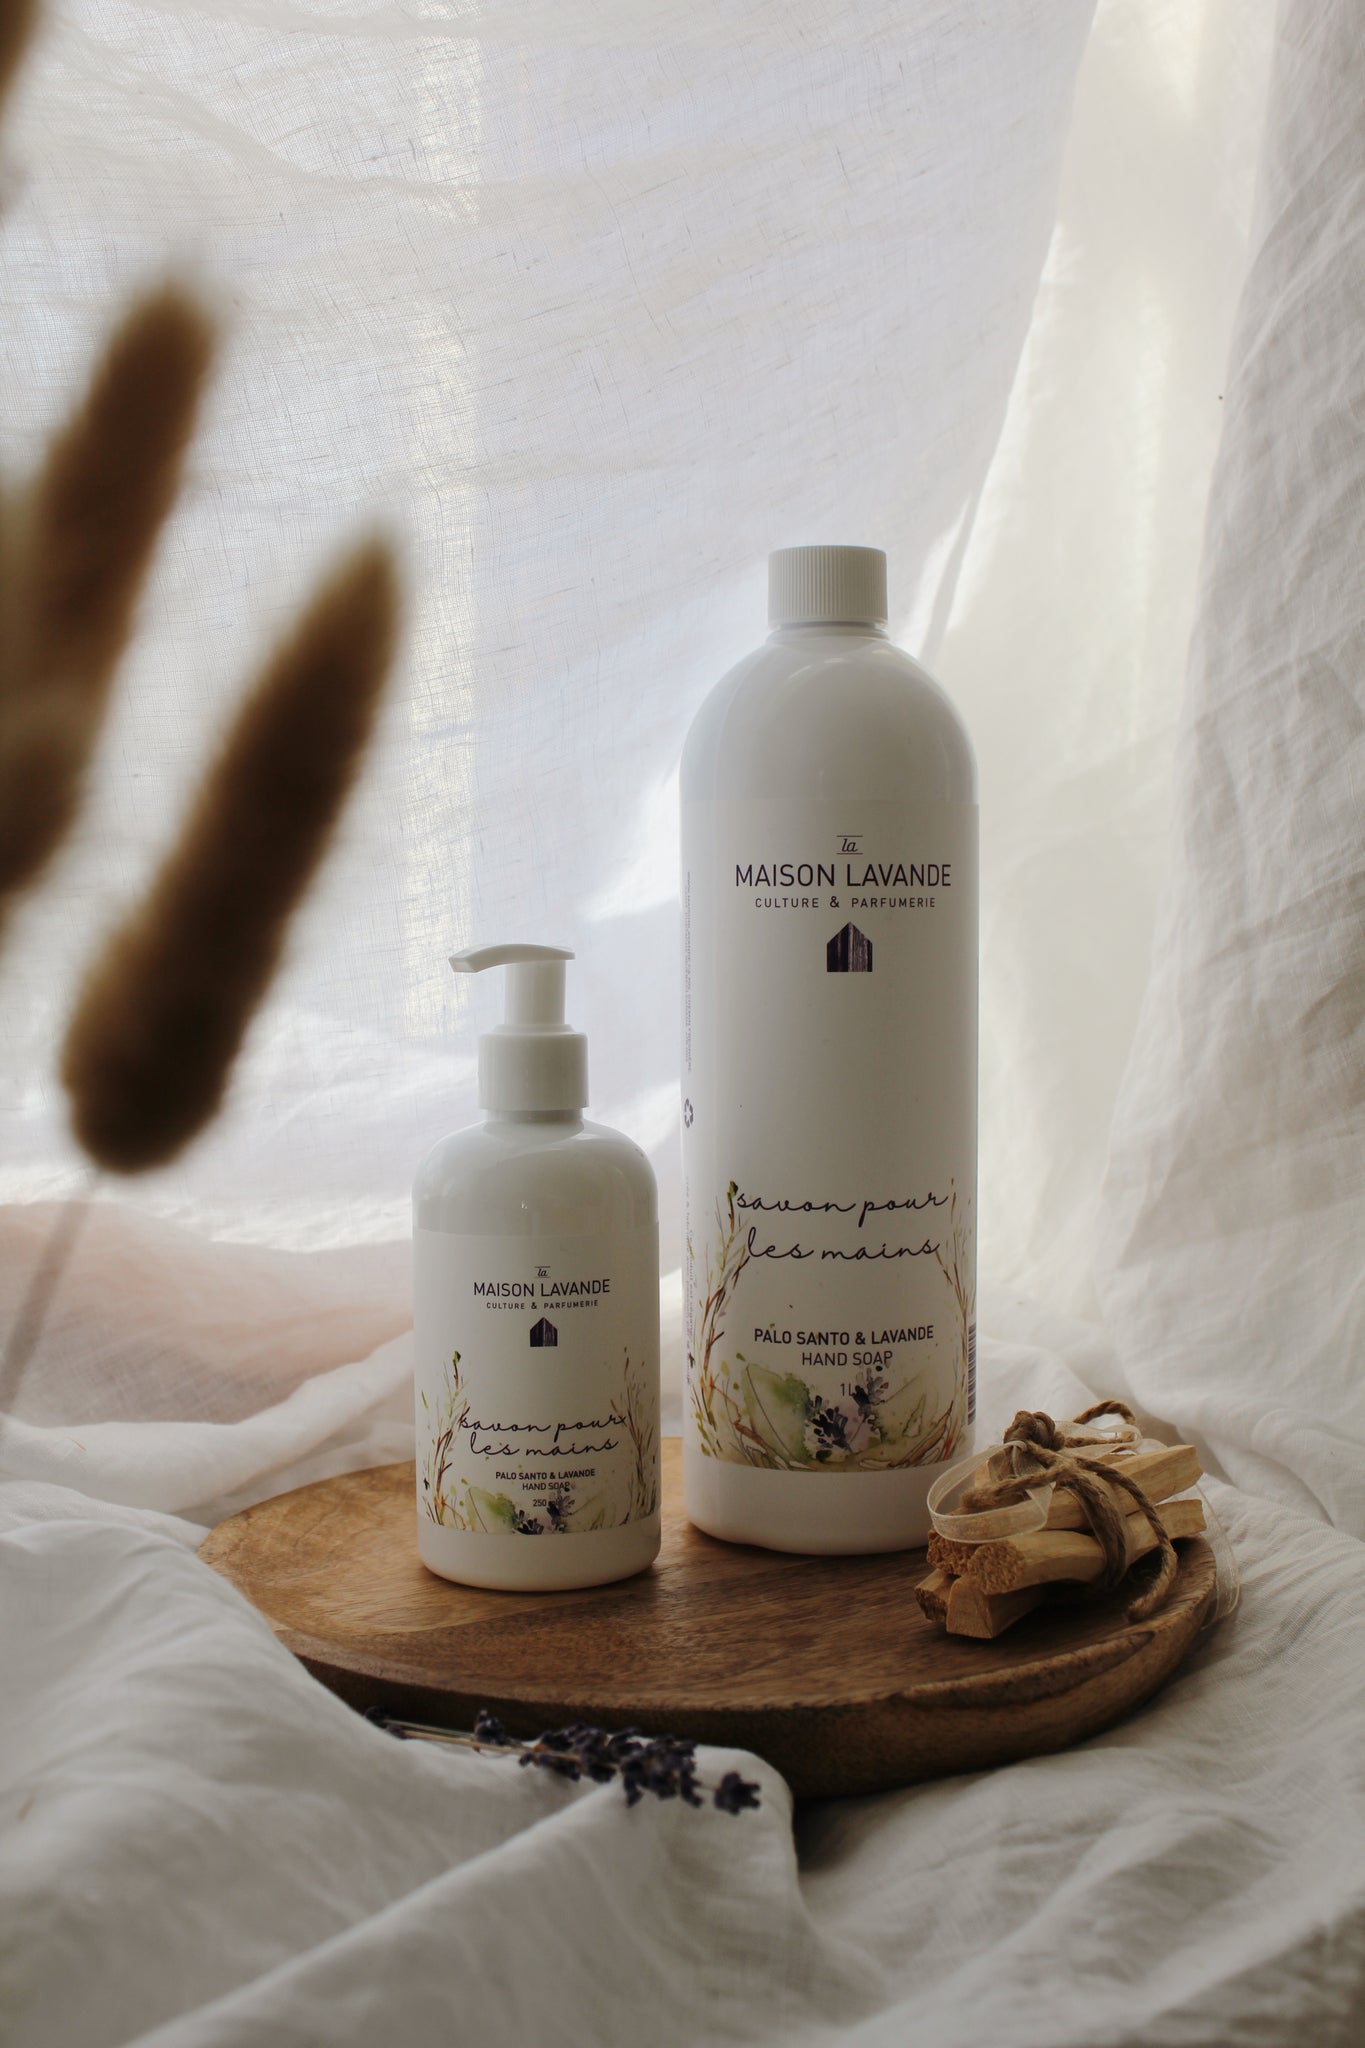 Savon pour les mains - Palo Santo & lavande ||Hand gel soap - Palo Santo & Lavender